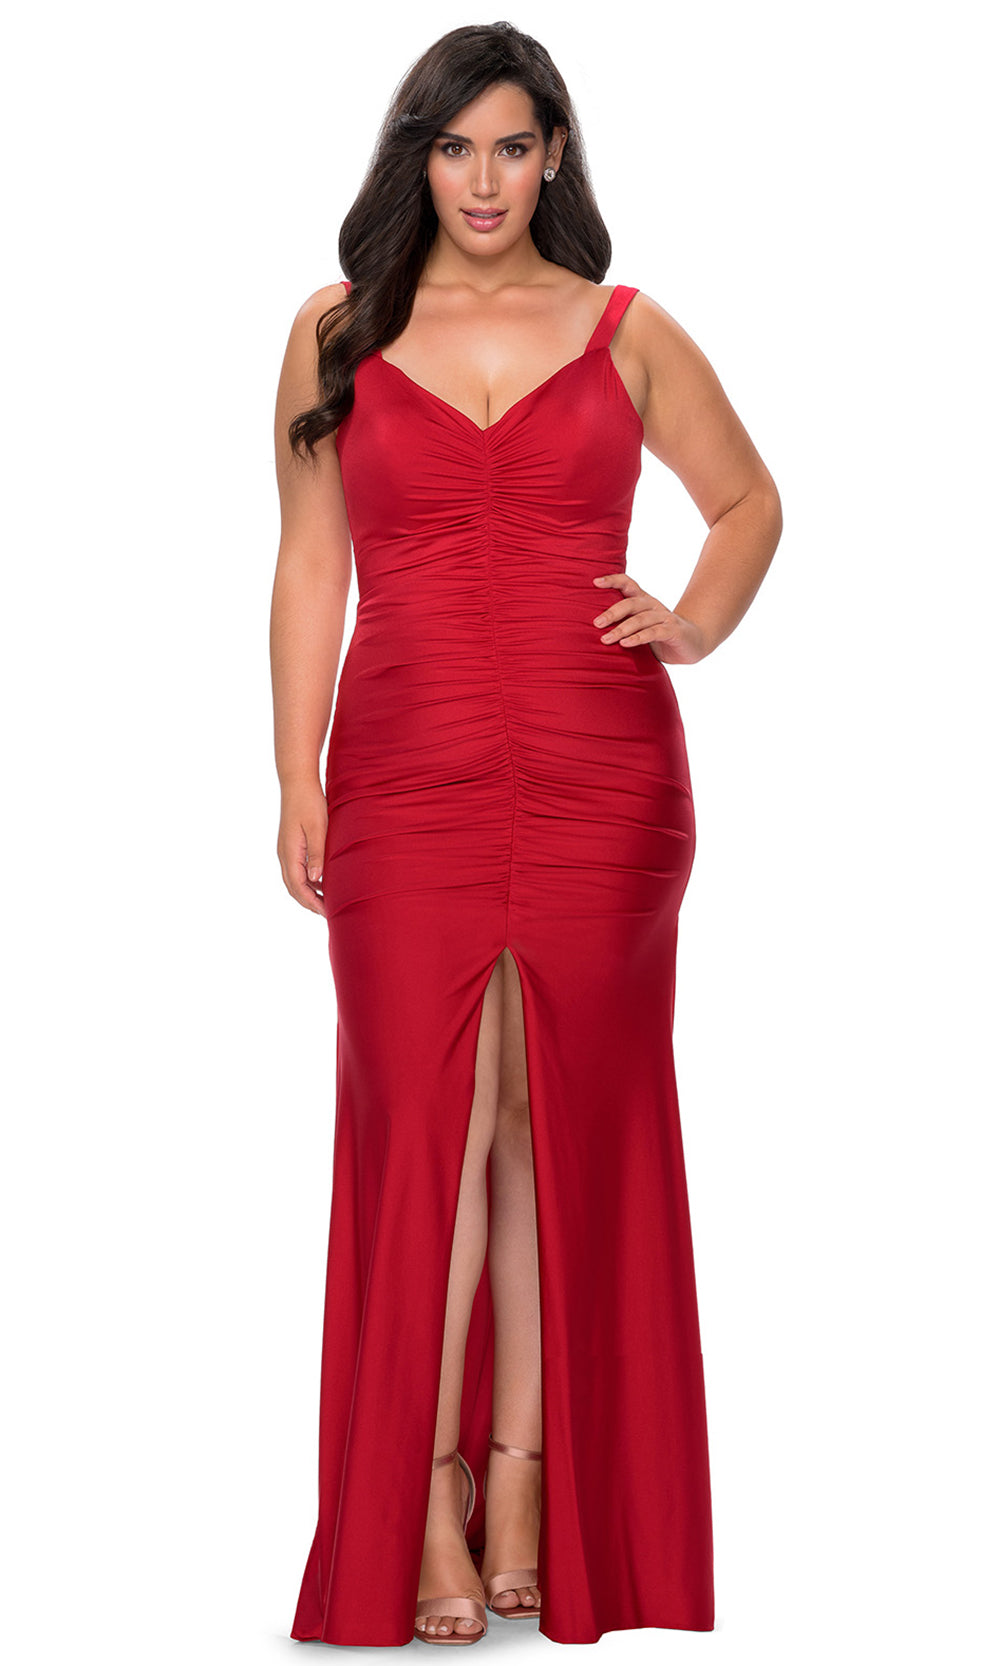 La Femme - 29027 V Neck Trumpet Dress With Slit In Red